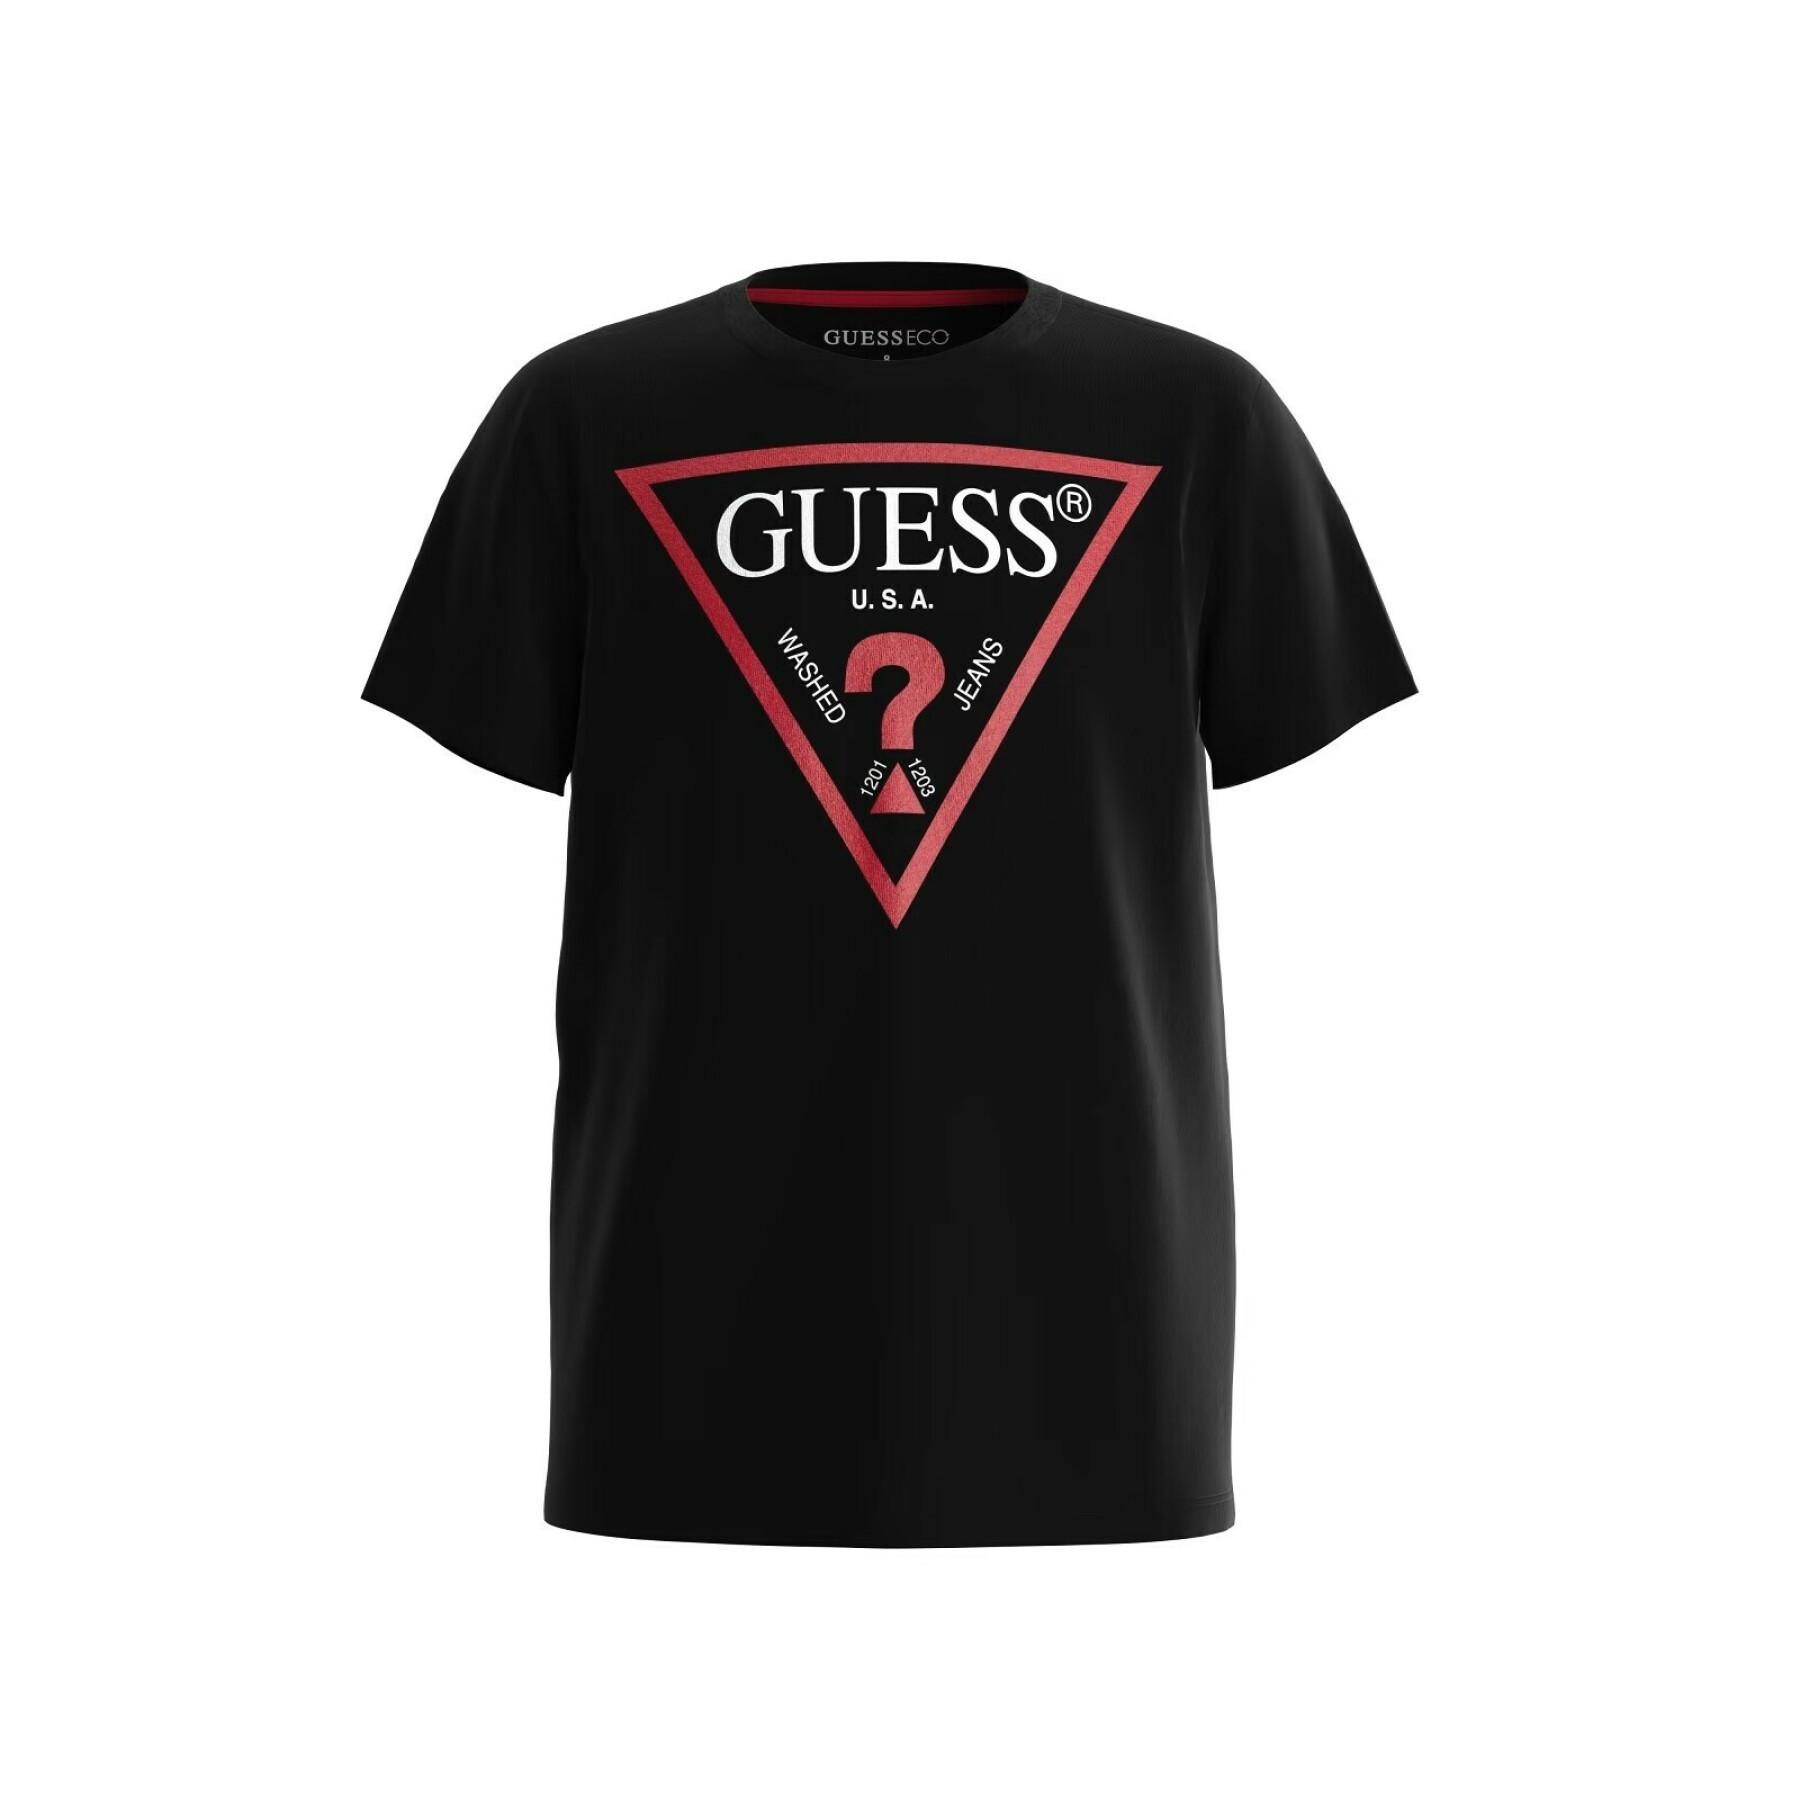 T-shirt för barn Guess Core